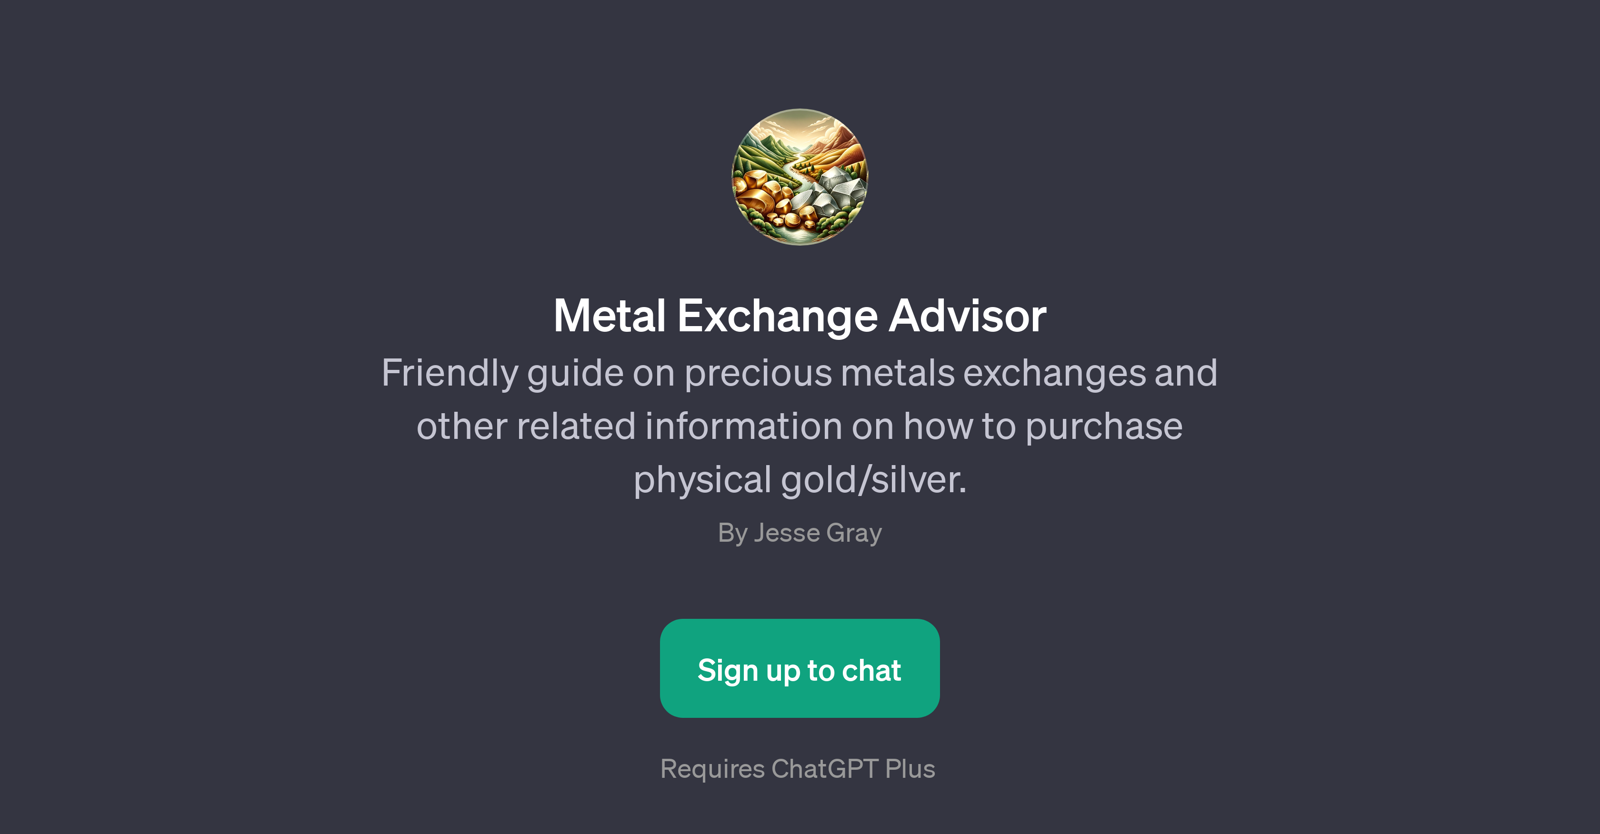 Metal Exchange Advisor website